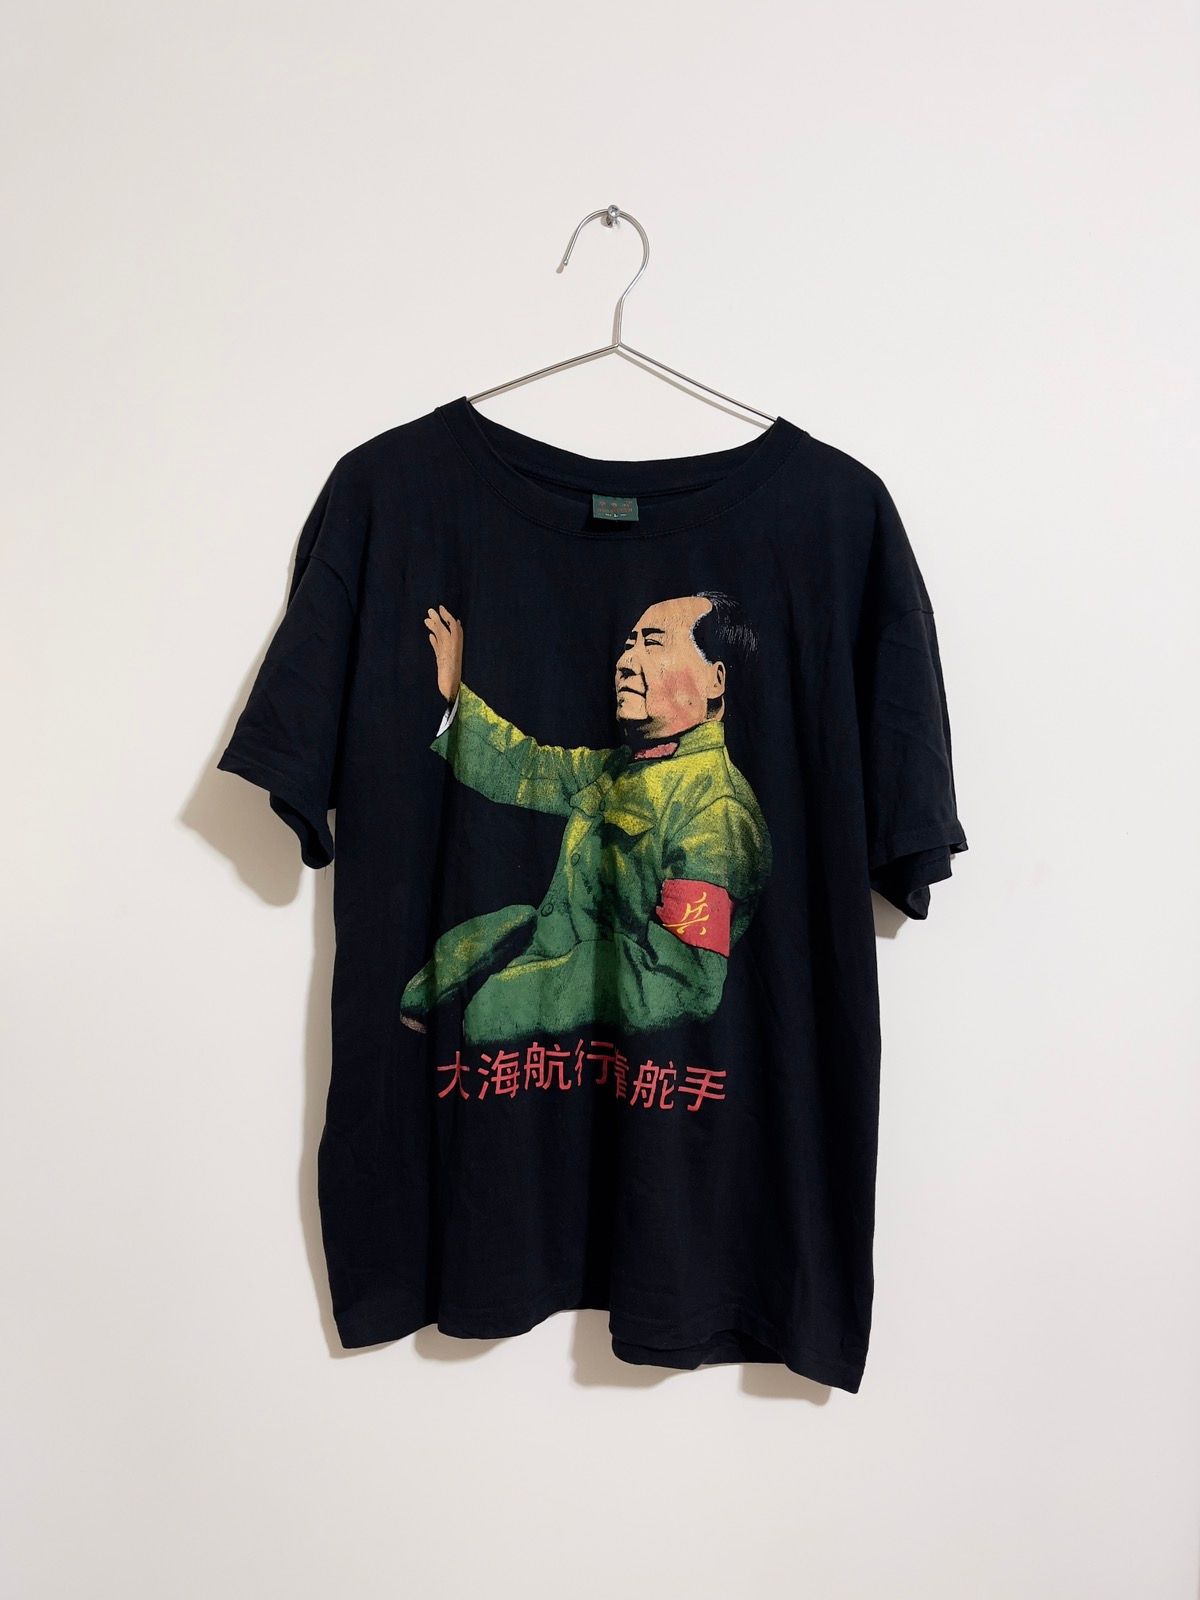 Enfants Riches Deprimes Vintage Mao Zedong T Shirt | Grailed